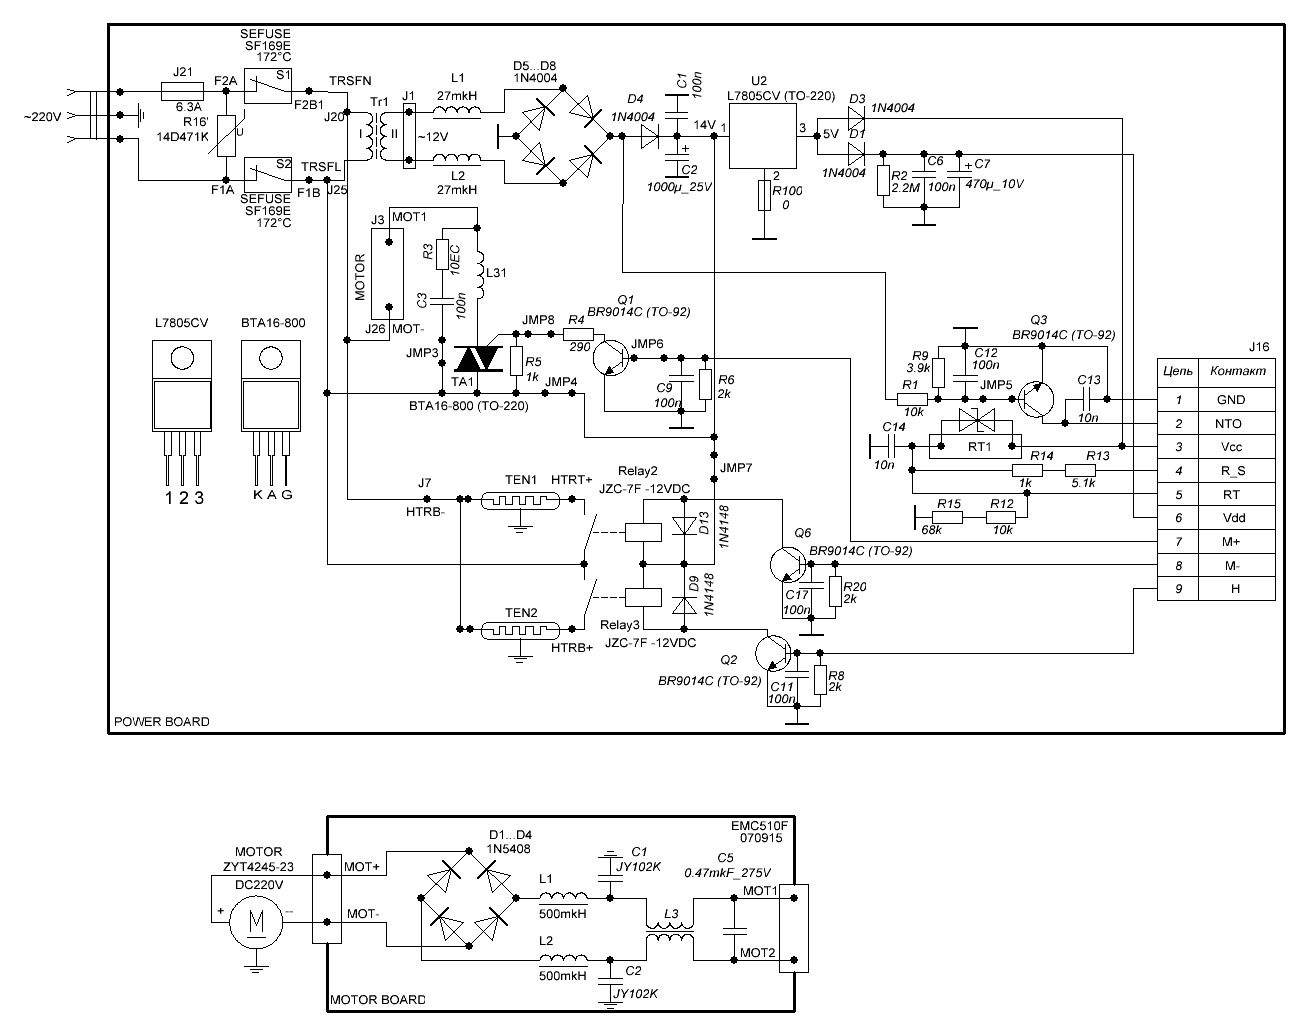 Схема силового блока и мотора хлебопечки MULINEX model 573912